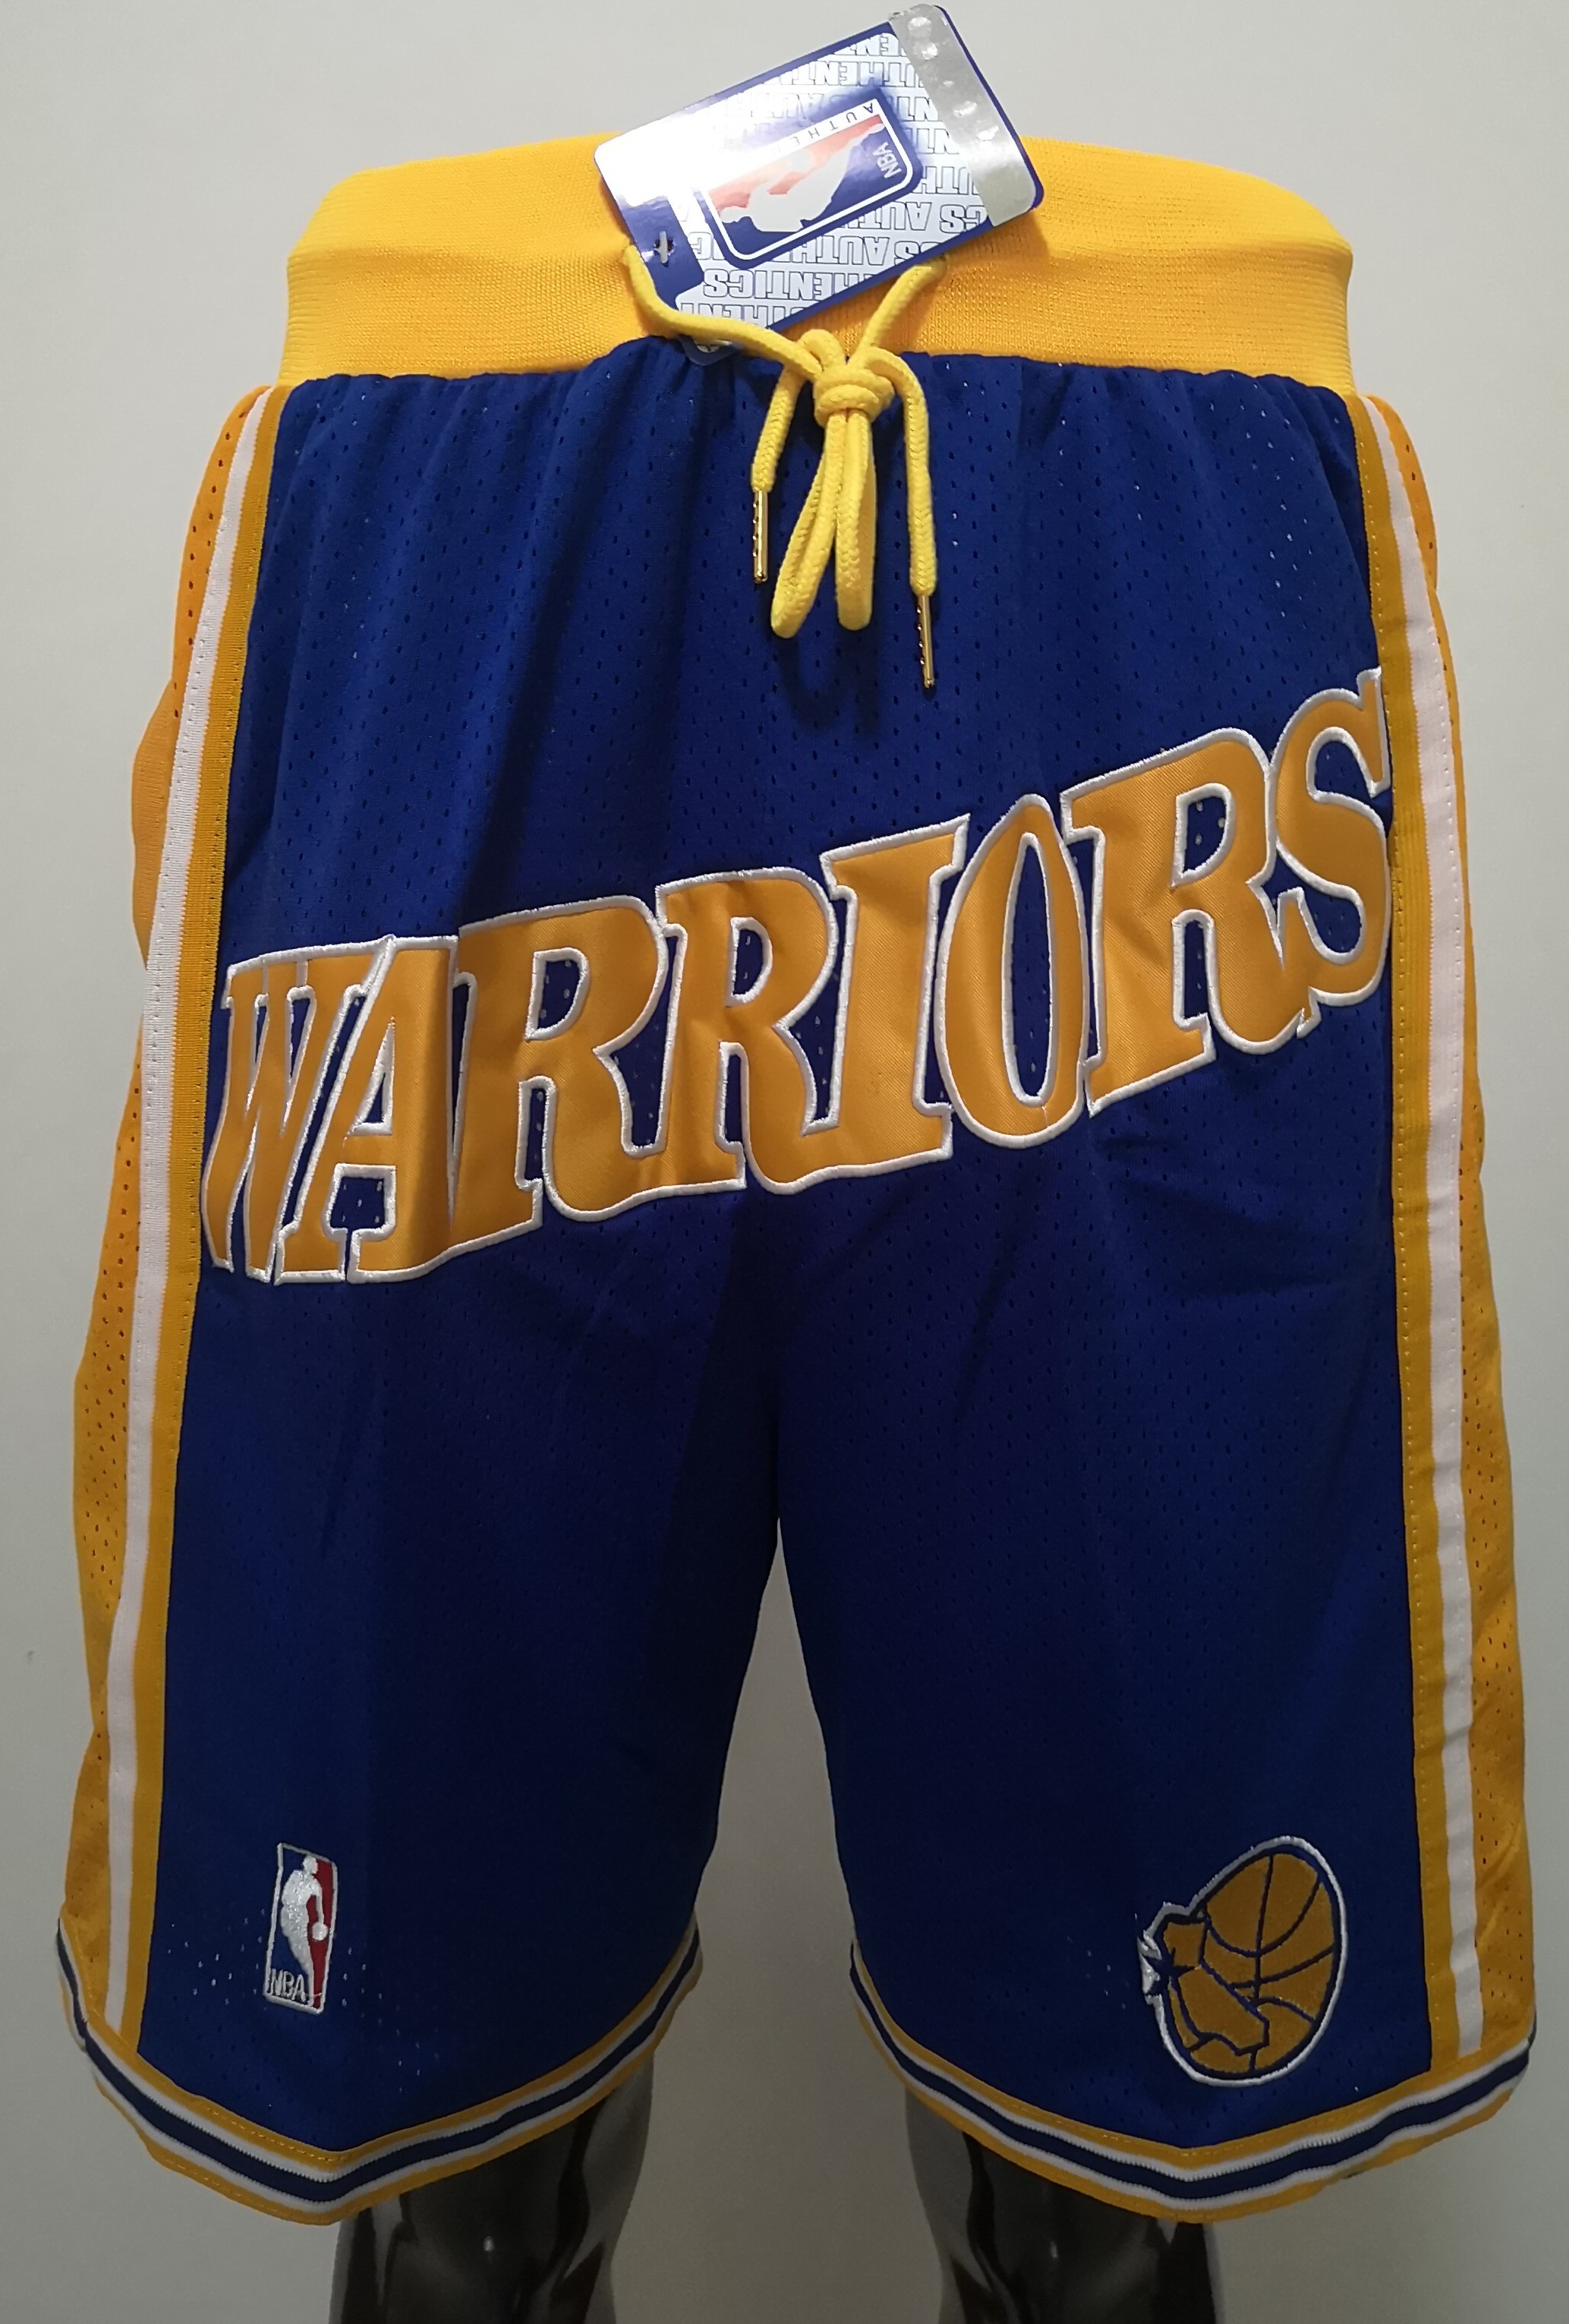 2020 Men NBA Golden State Warriors blue shorts->golden state warriors->NBA Jersey